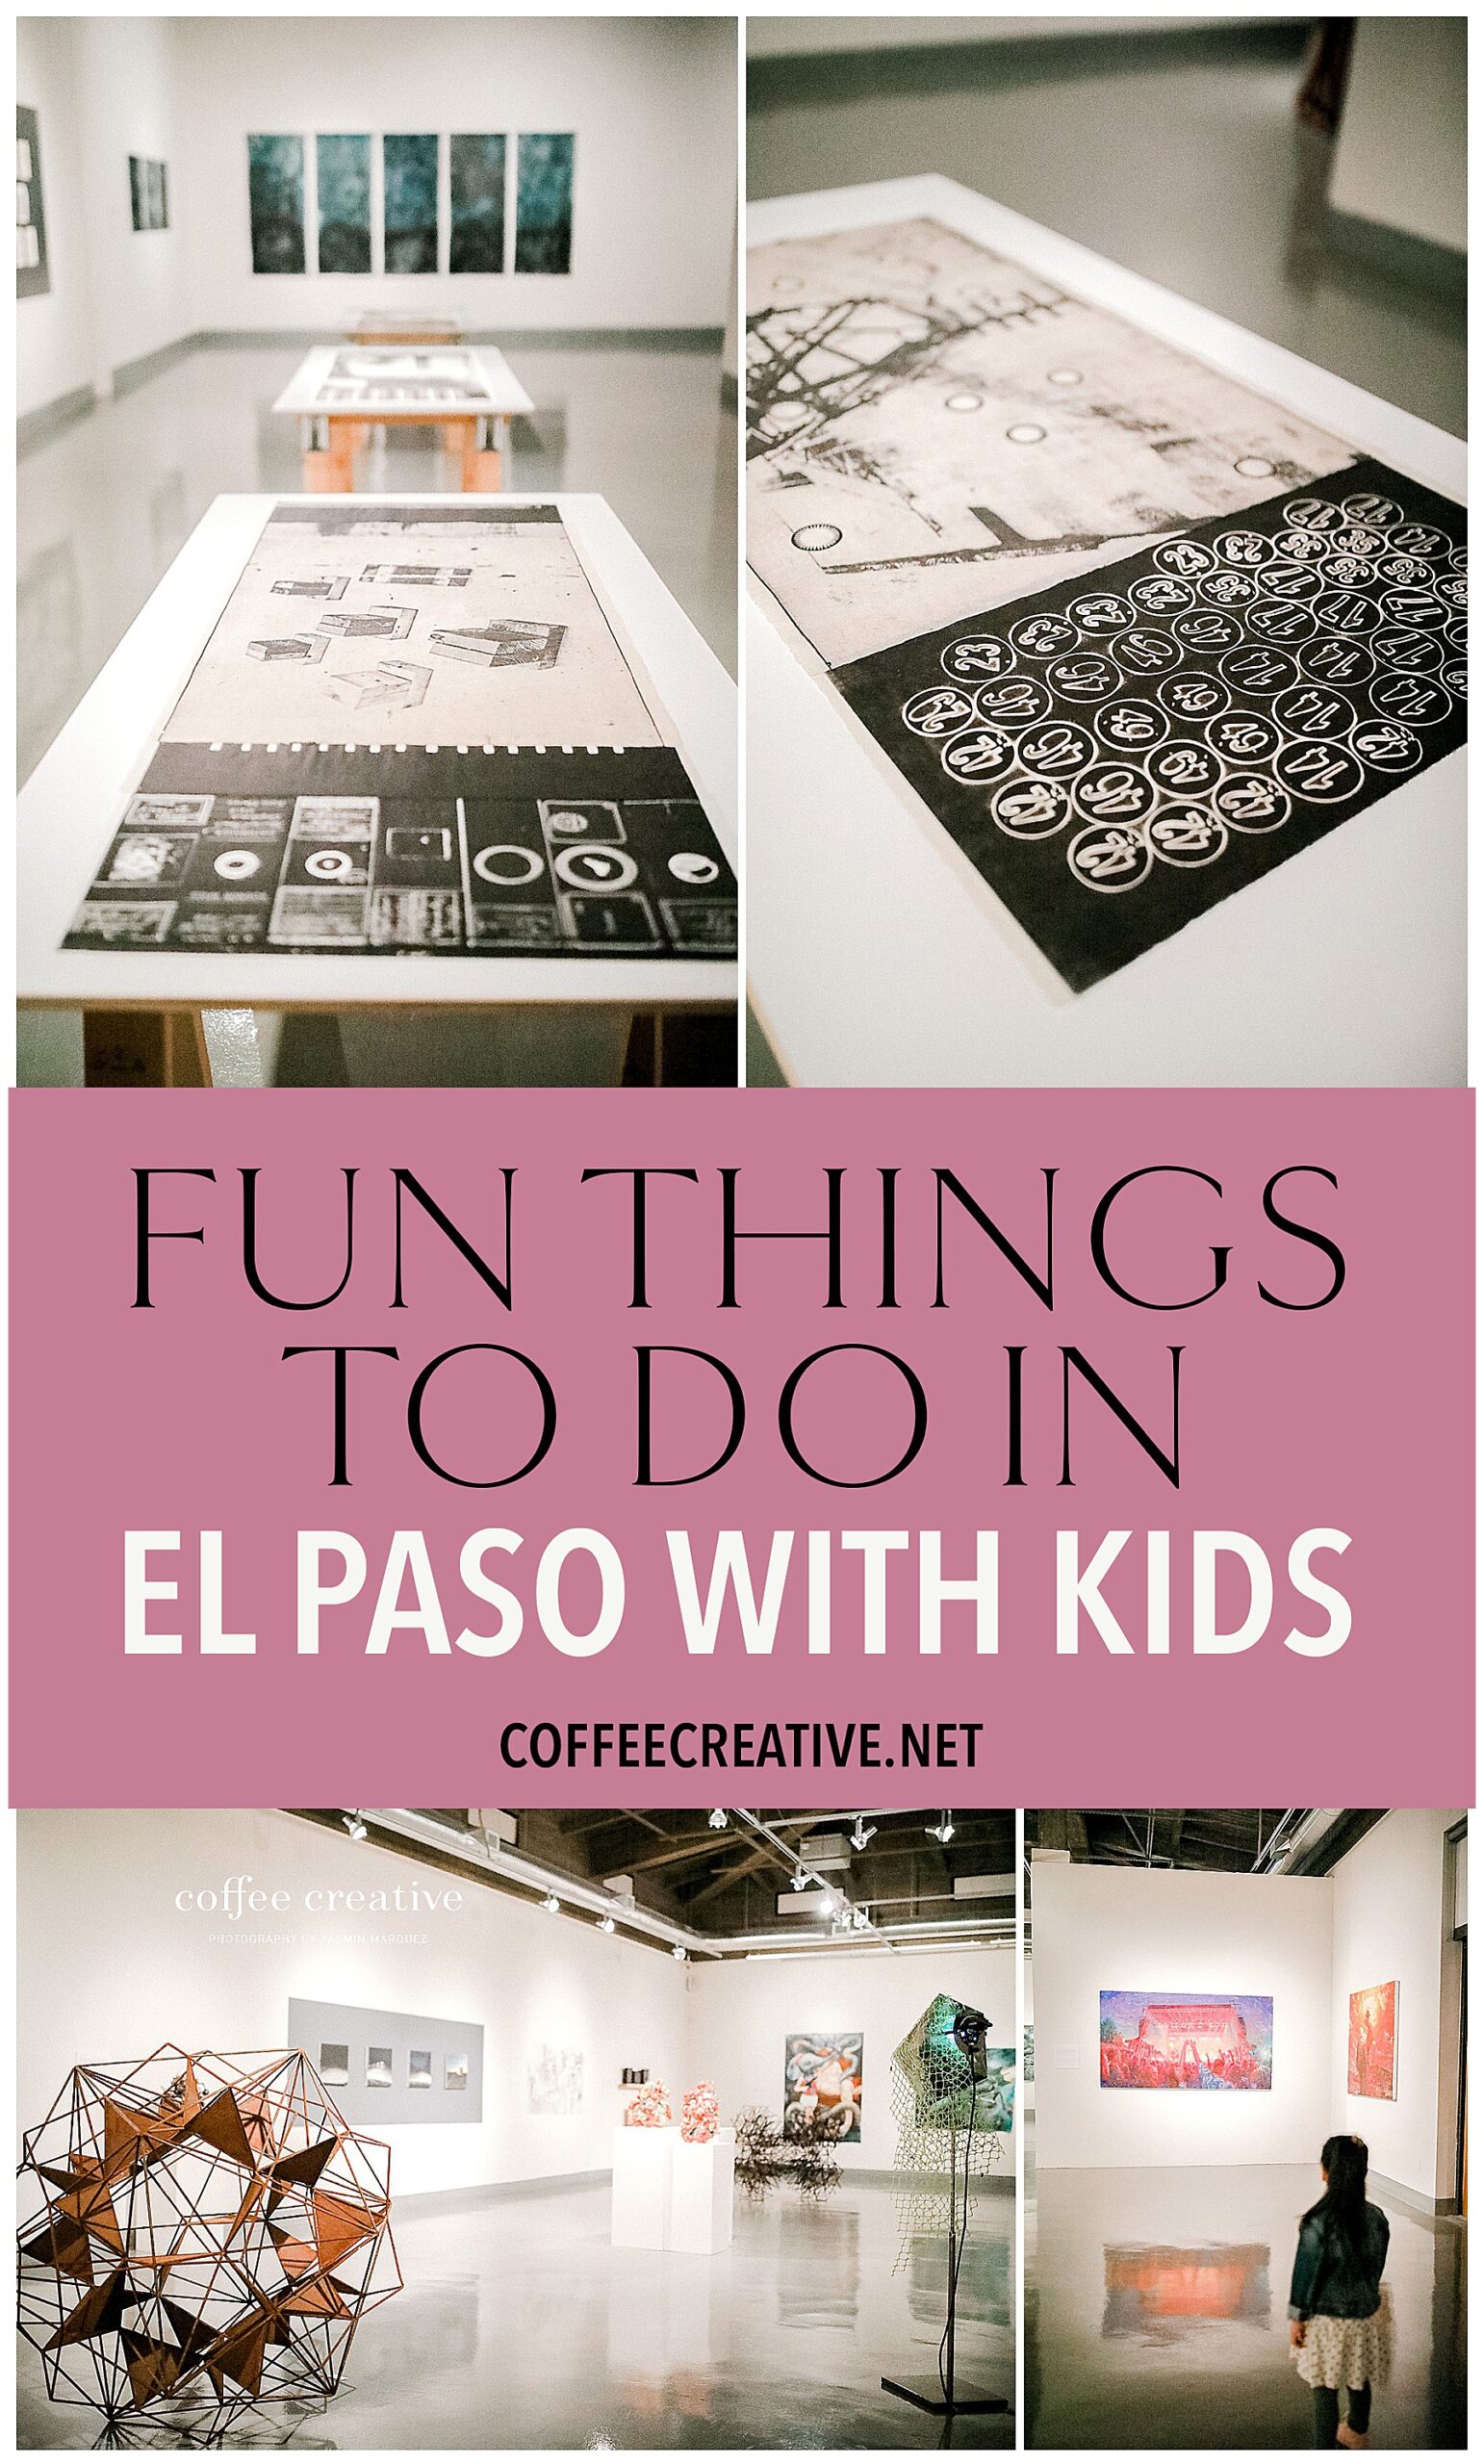 Kids Activities in El Paso, Art museum in el paso, fun things in el paso, el paso art